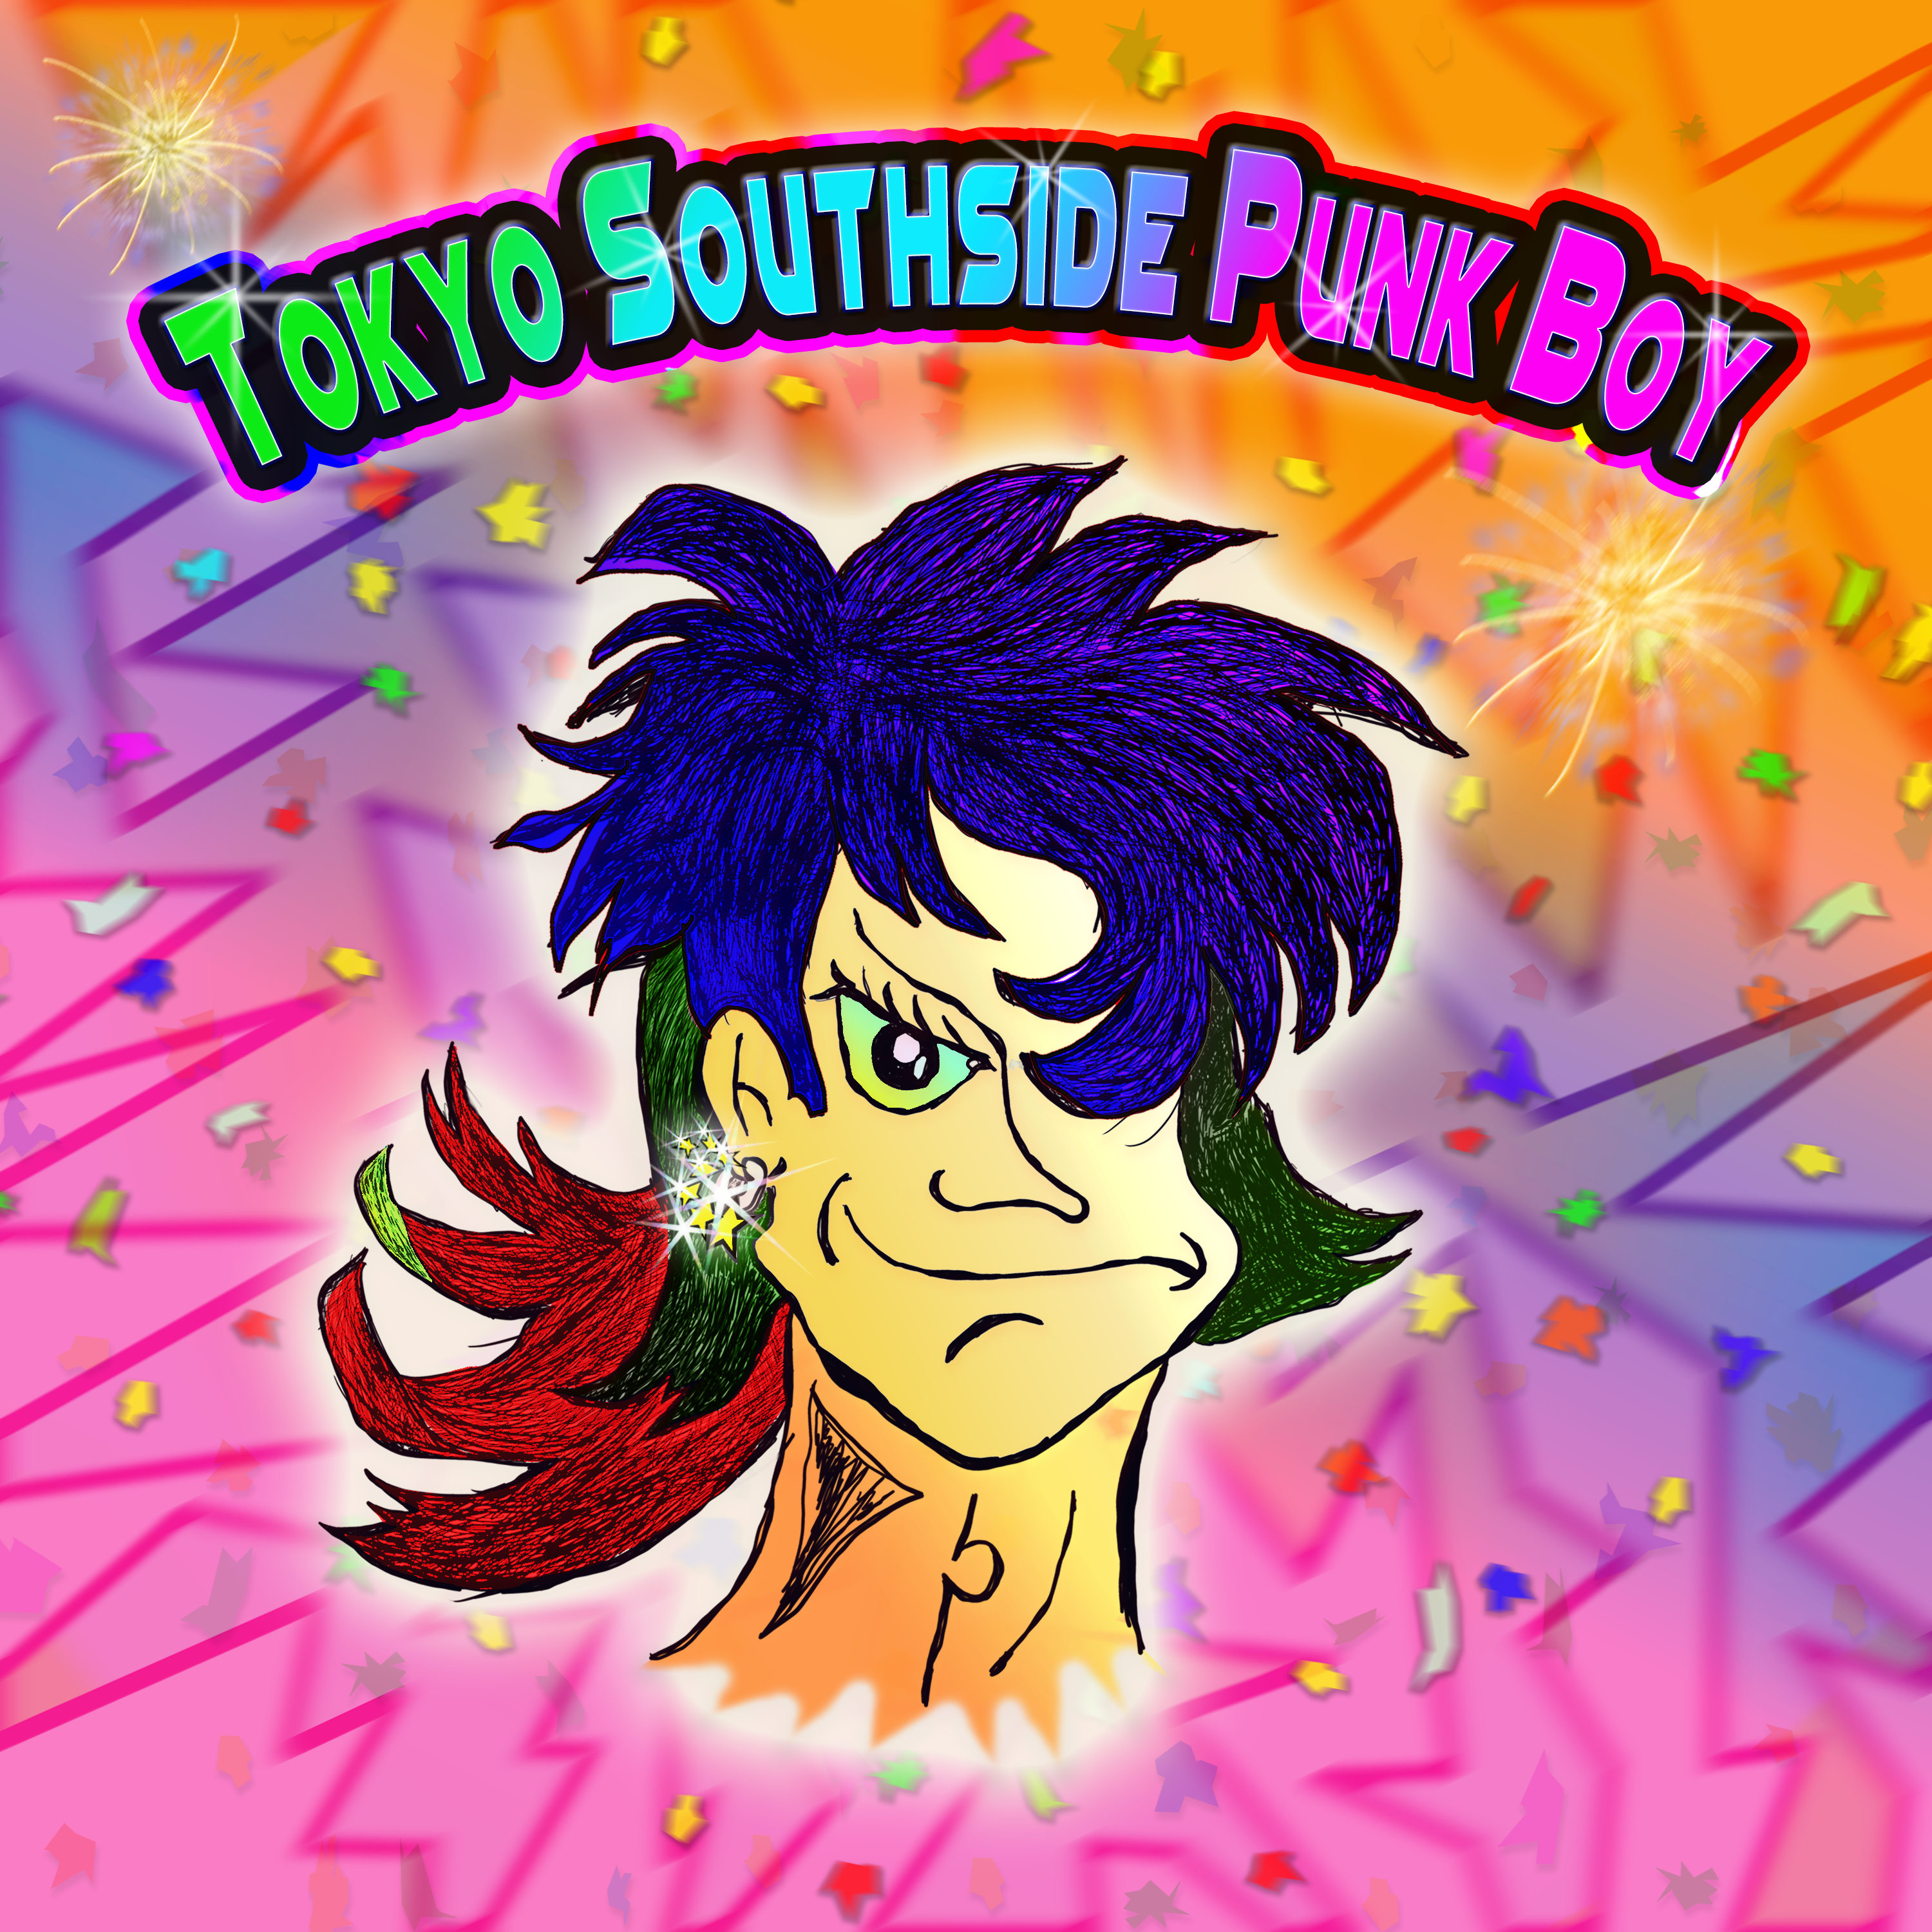 Tokyo Southside Punk Boy_#7